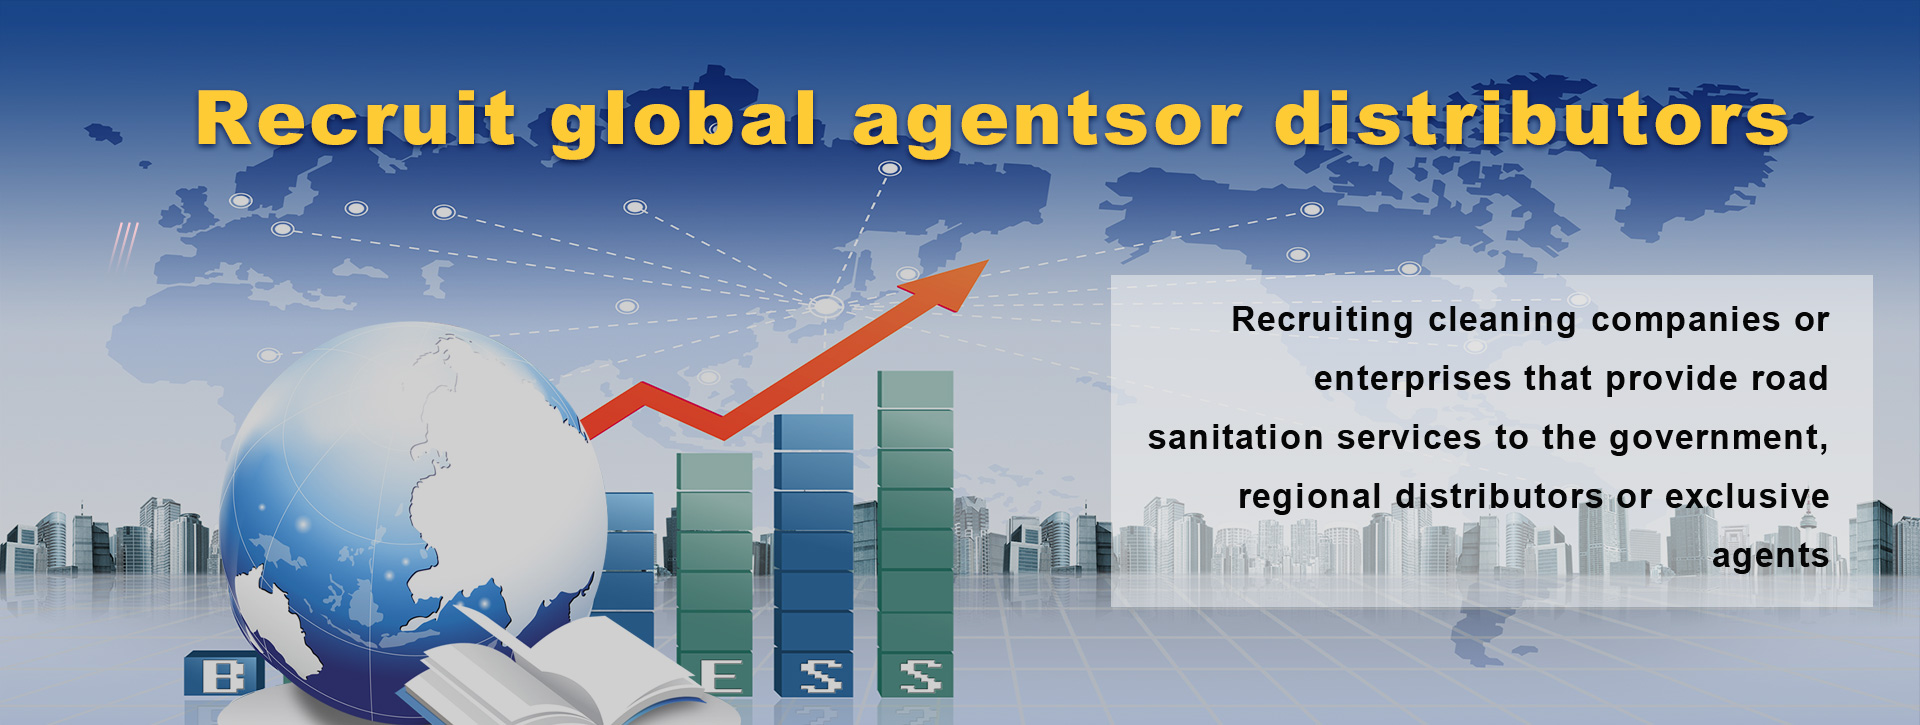 global agents recrut